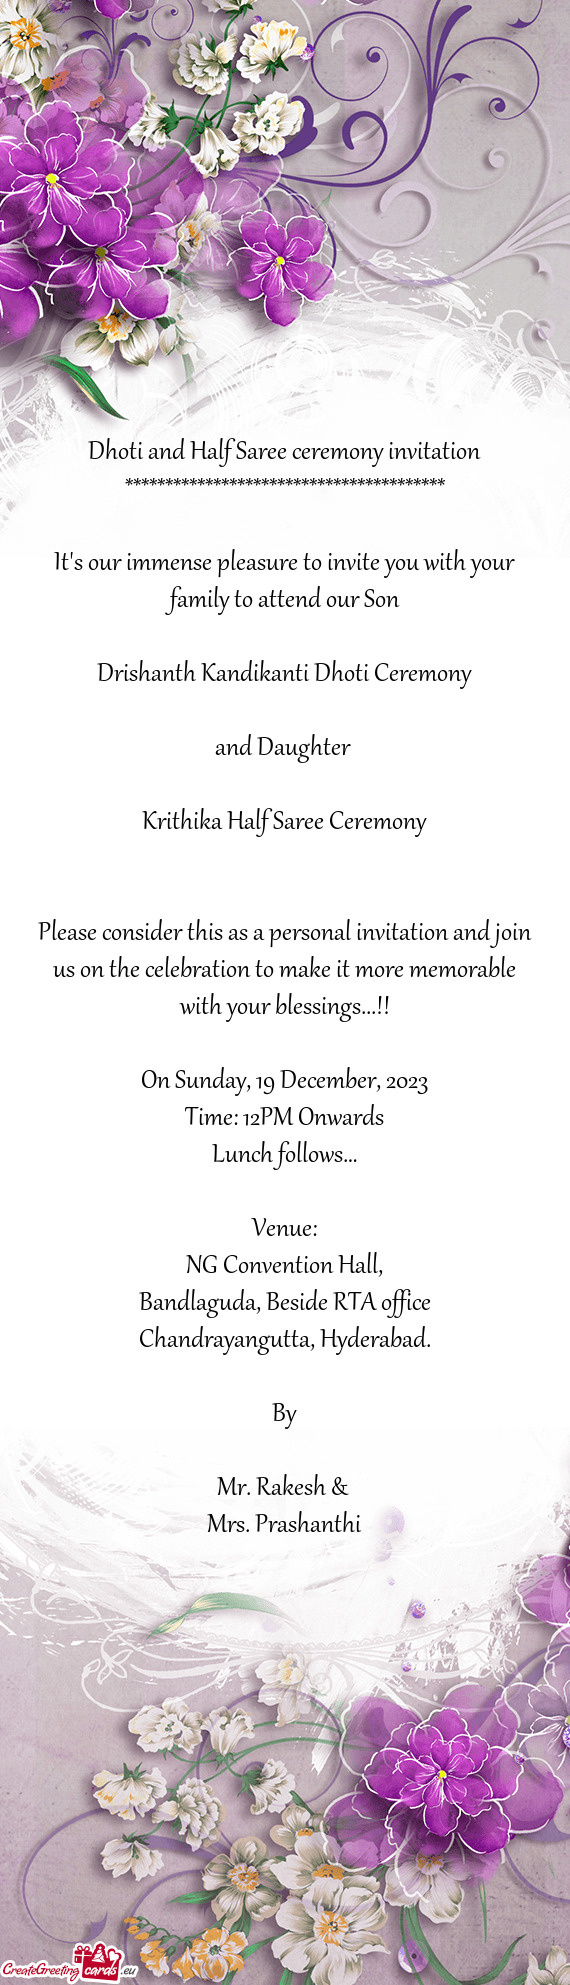 Drishanth Kandikanti Dhoti Ceremony